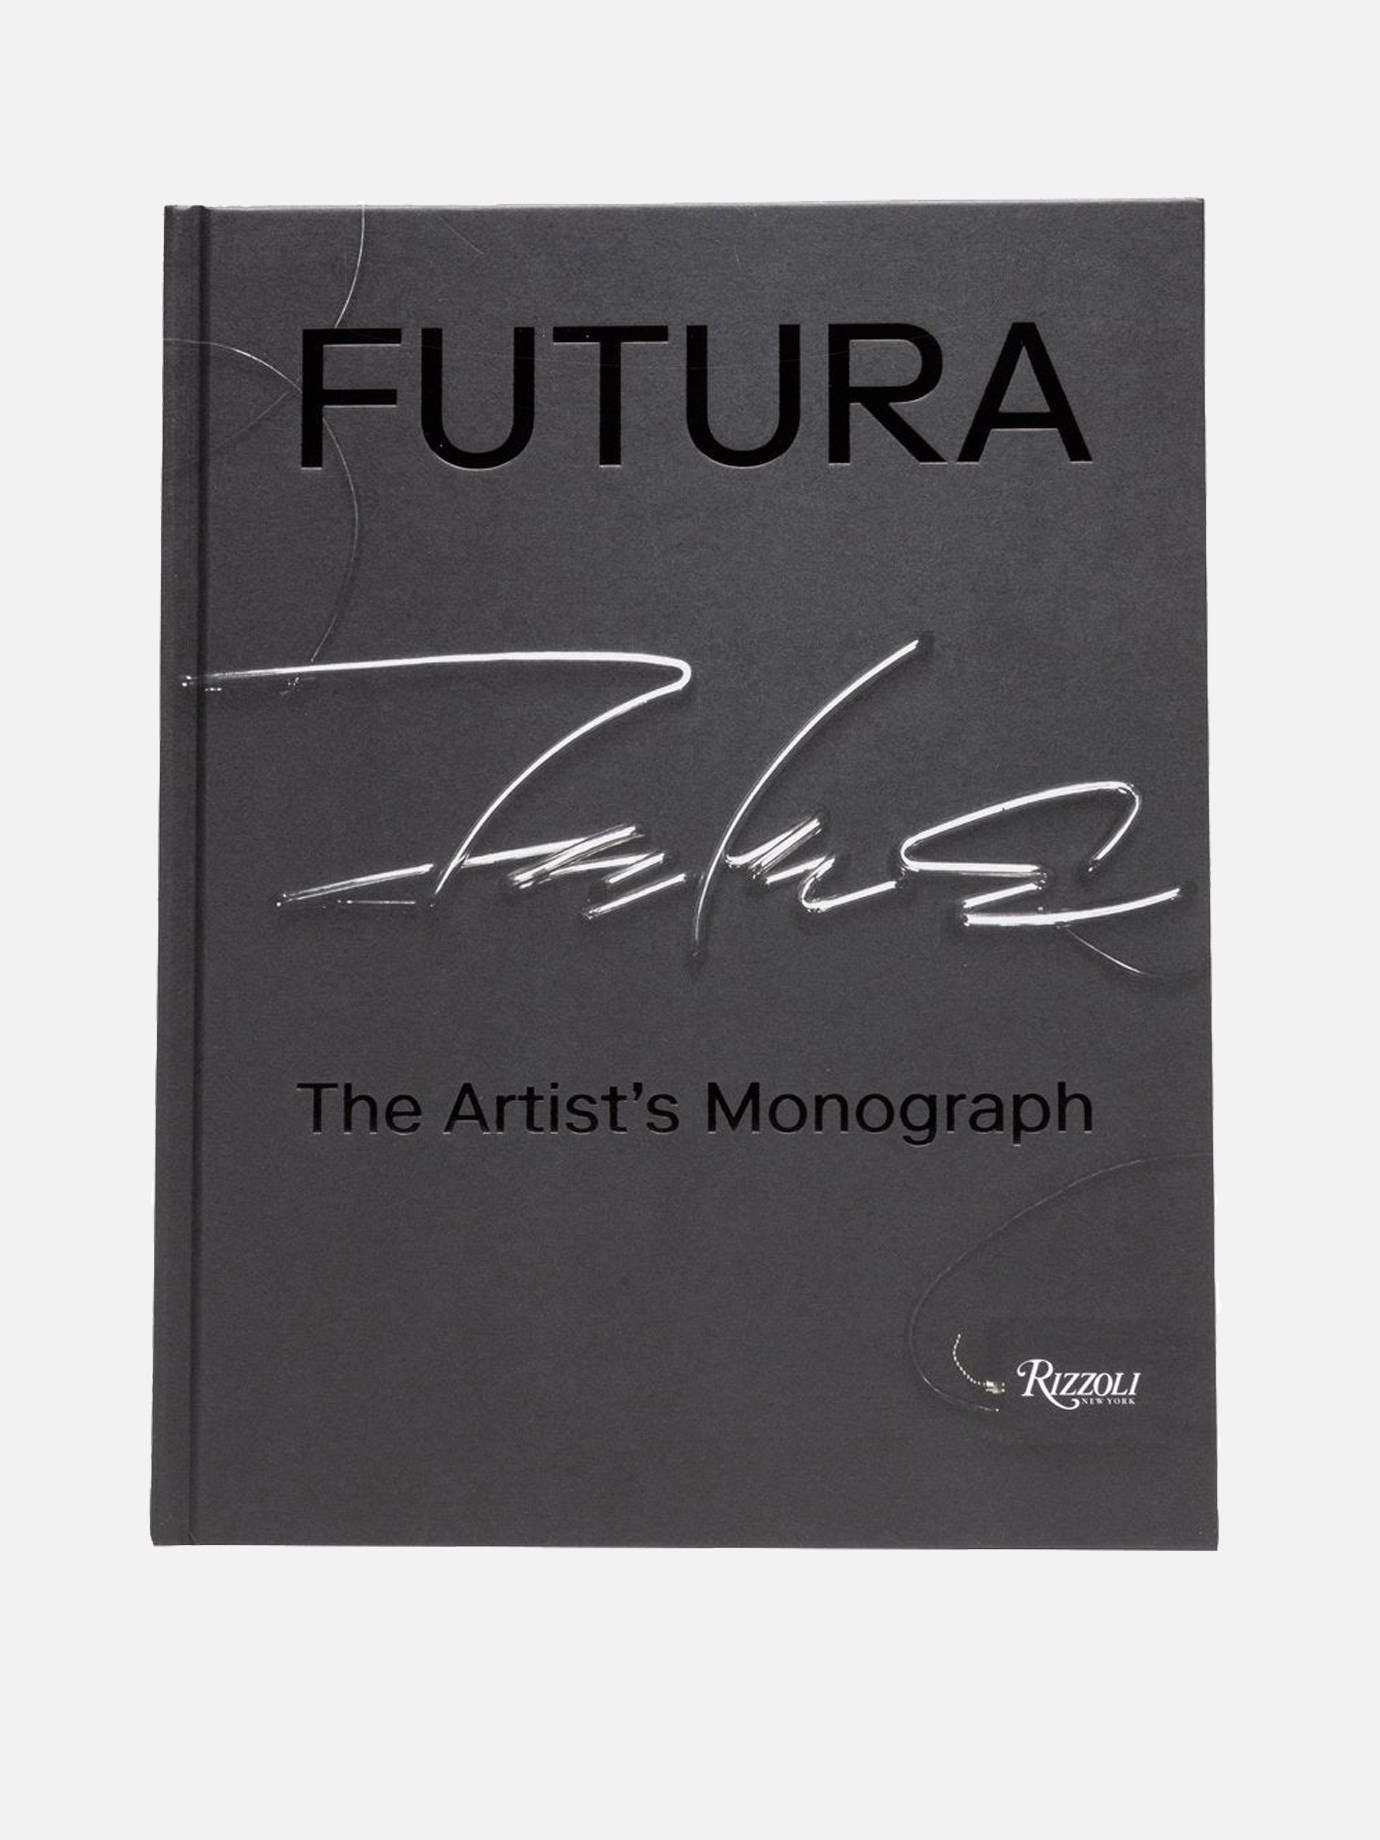  The Artist's Monograph  Rizzoli Futura by Rizzoli